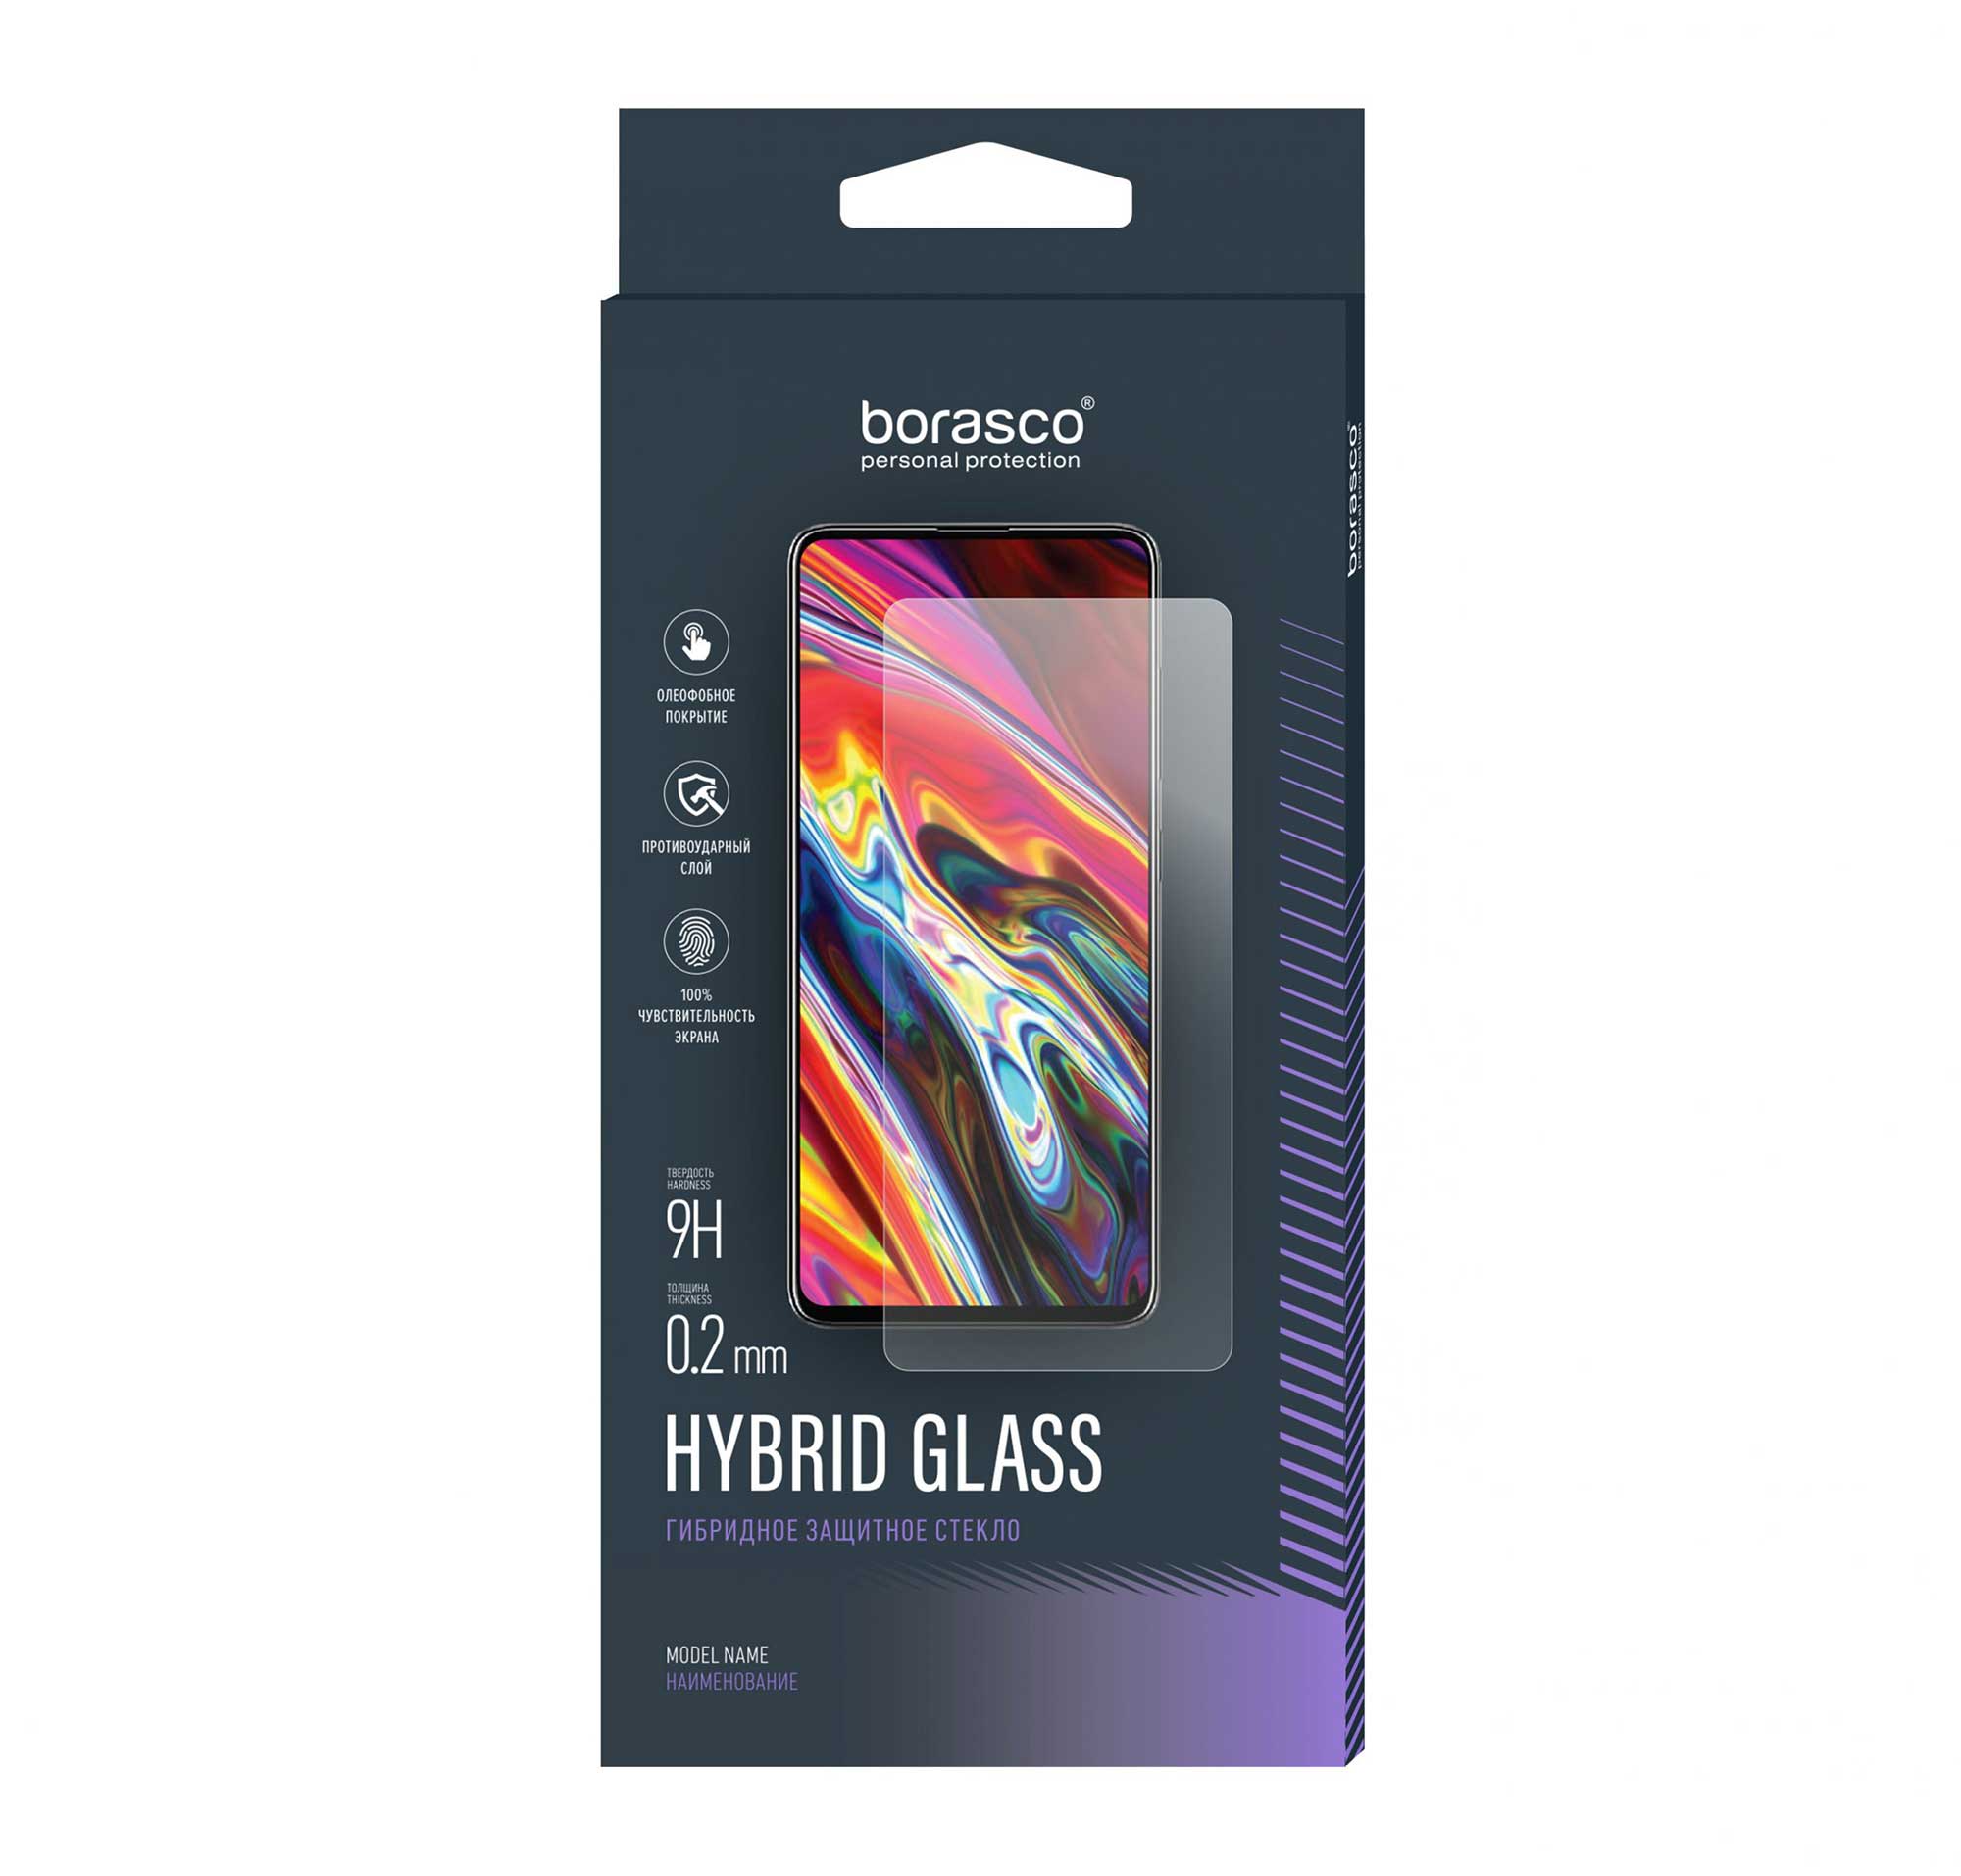 Защитное стекло BoraSCO Hybrid Glass для BQ 6040L Magic чехол mypads знак зодиака водолей 6 для bq bq 6040l magic задняя панель накладка бампер